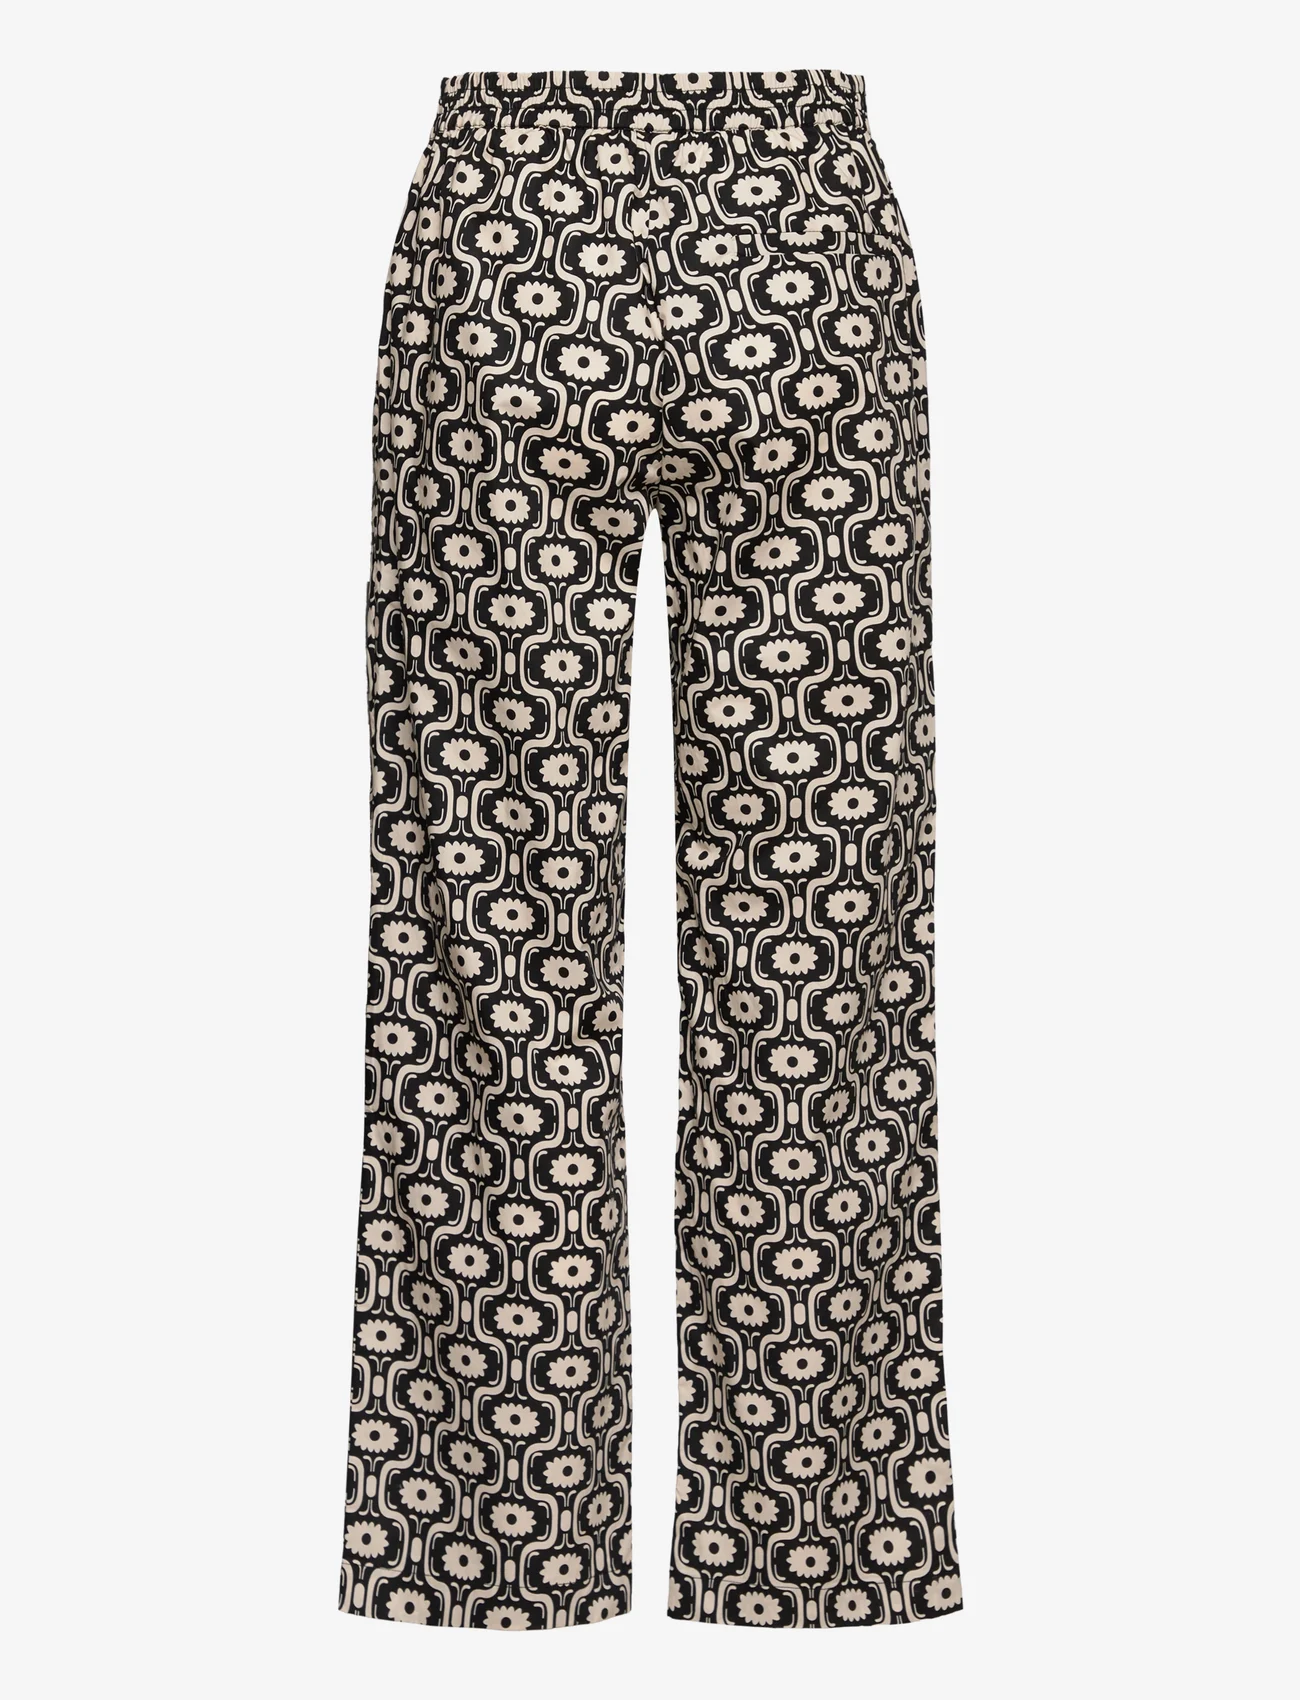 Modström - CoraMD print pants - broeken med straight ben - seventies fleur - 1